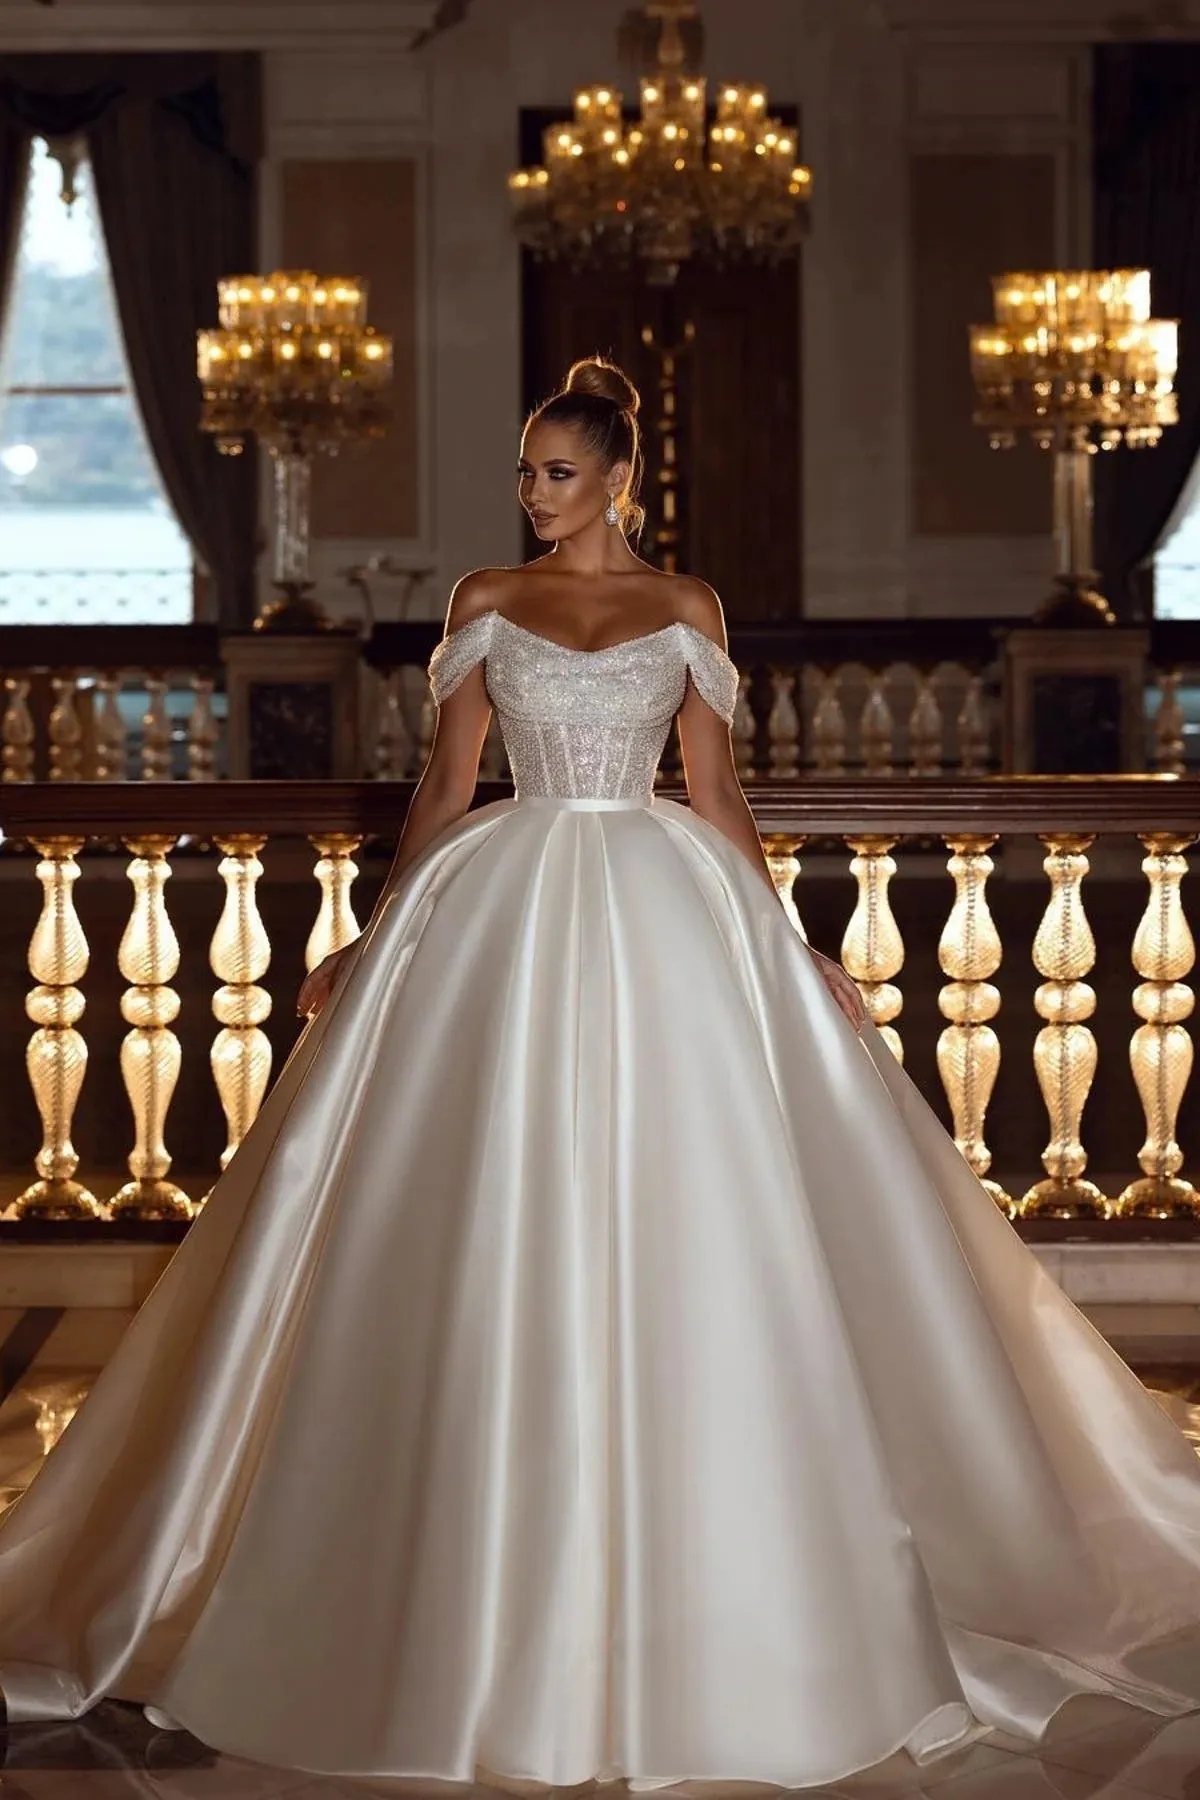 Robes de mariée de robe de bal de paillettes scintillantes avec train de satin détachable élégant hors de l'épaule Dubaï arabe moderne robes de mariée Robe de